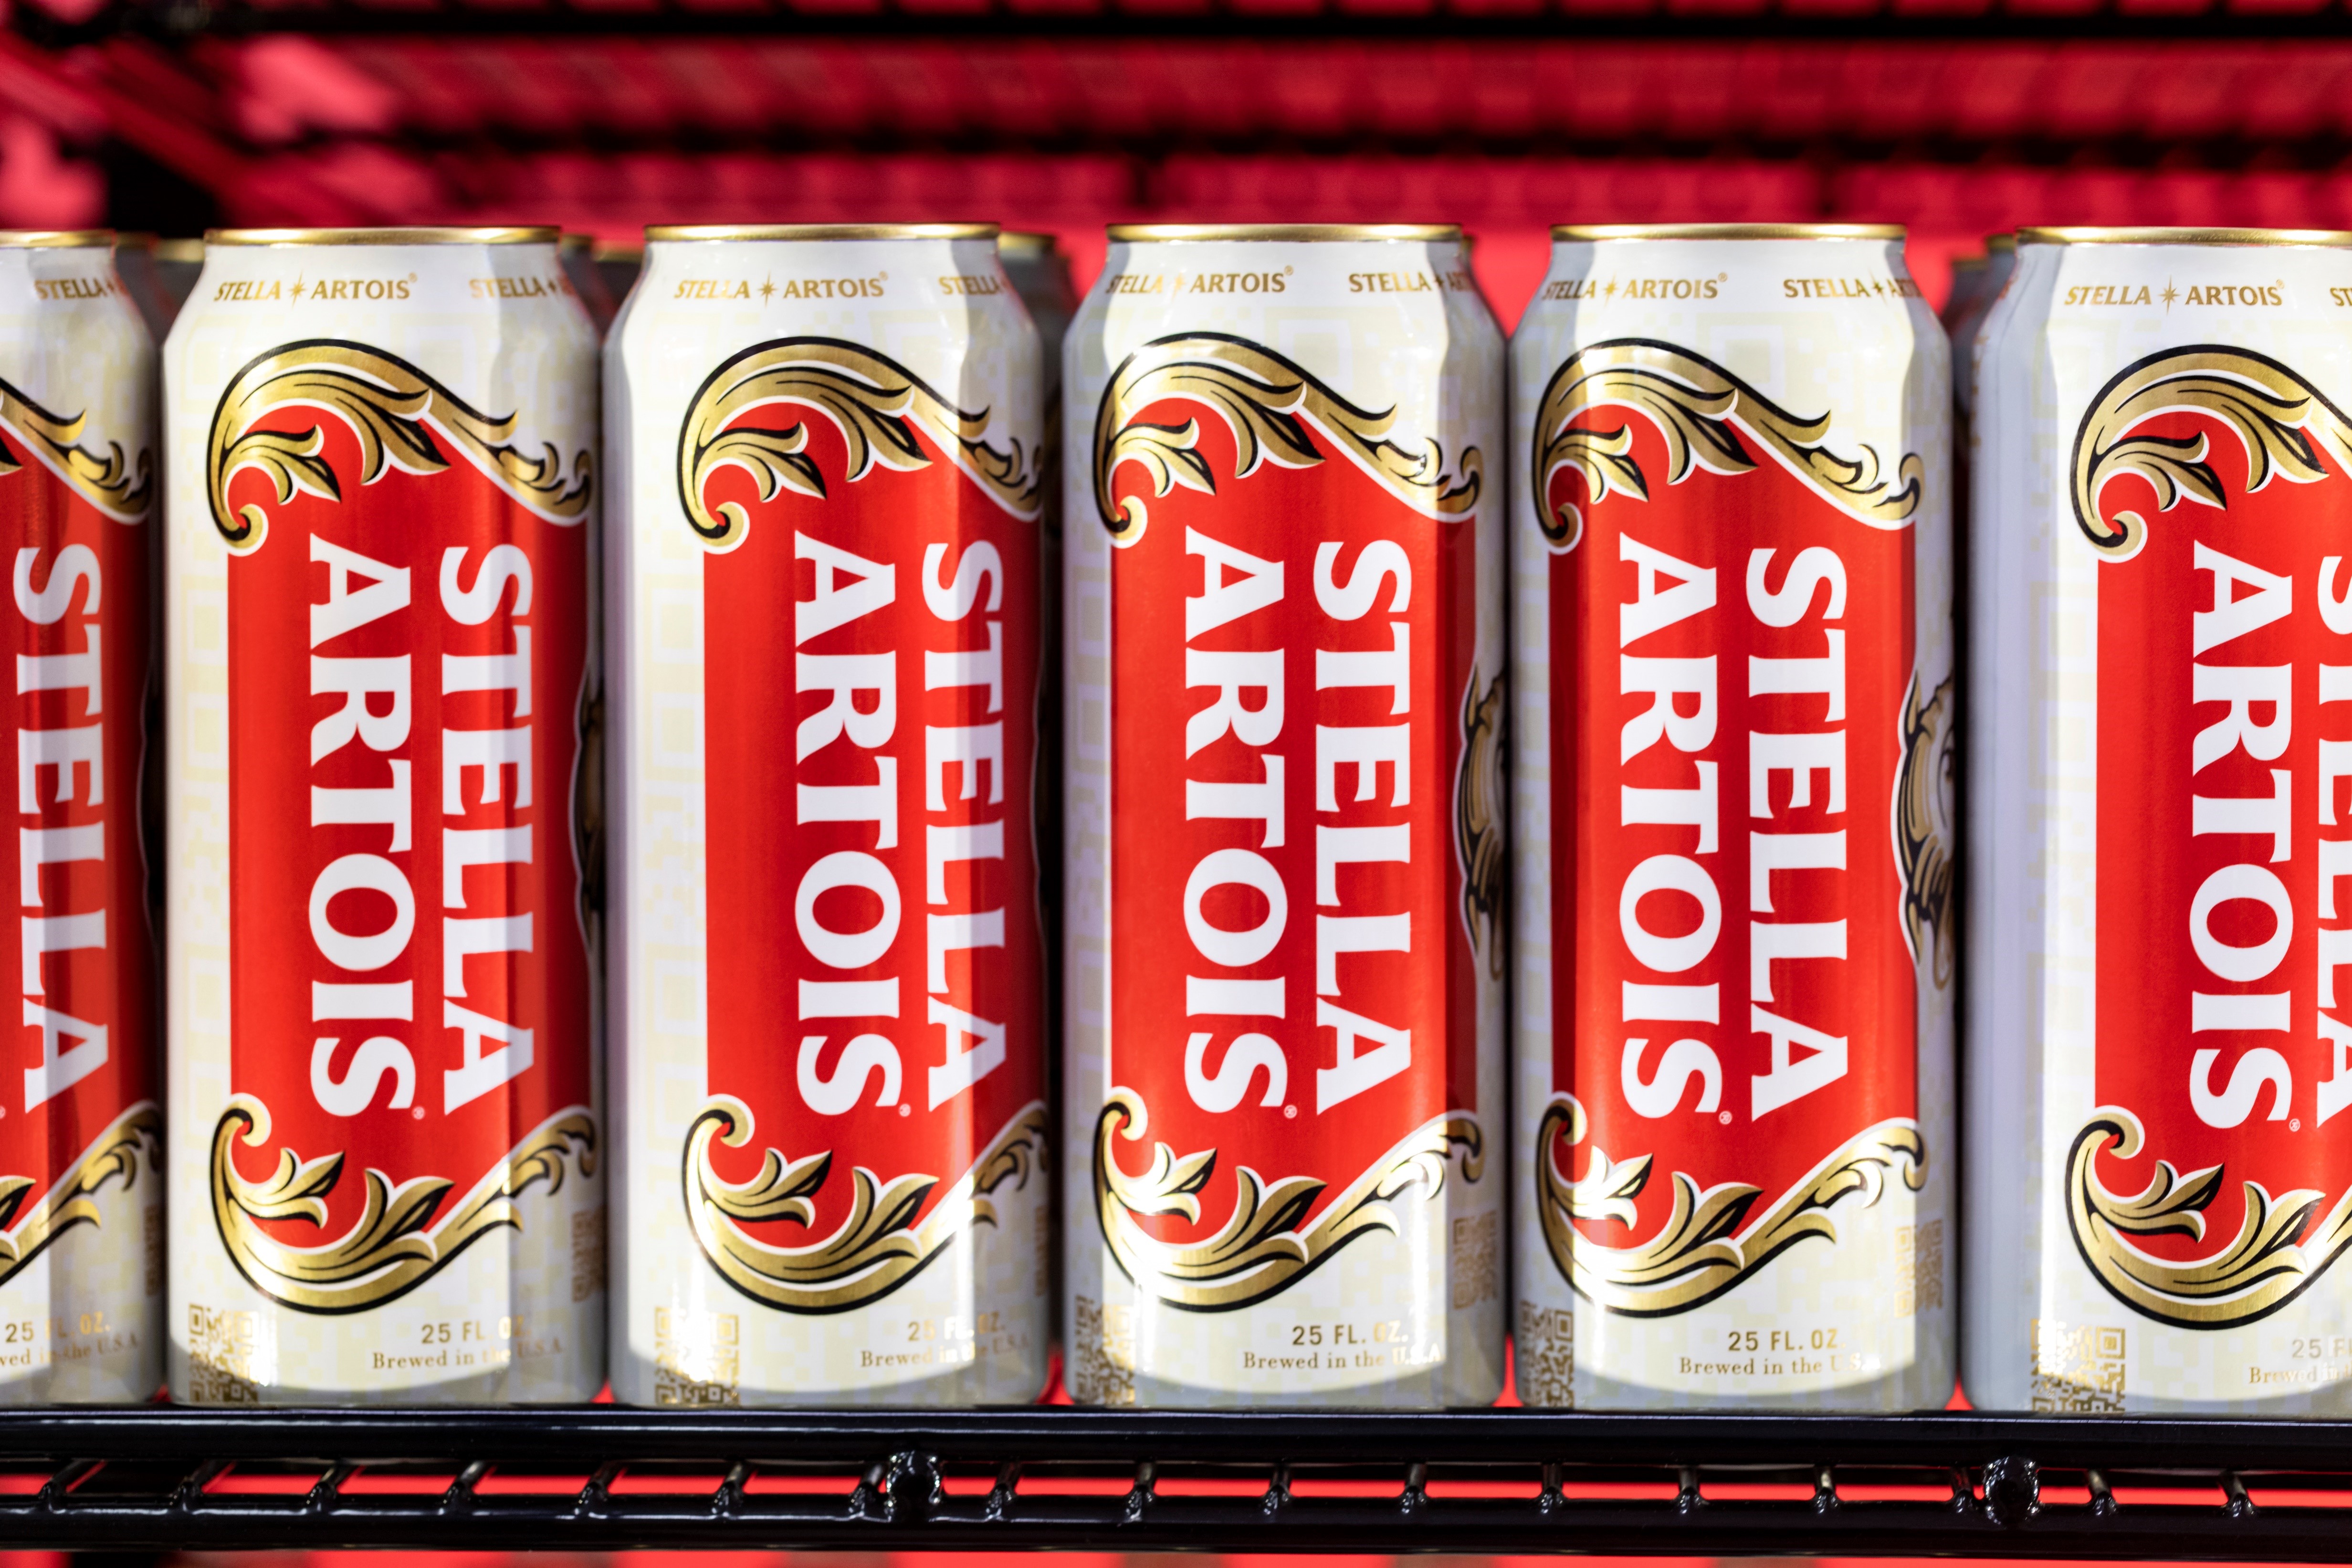 Anheuser-Busch will brew Stella Artois in US